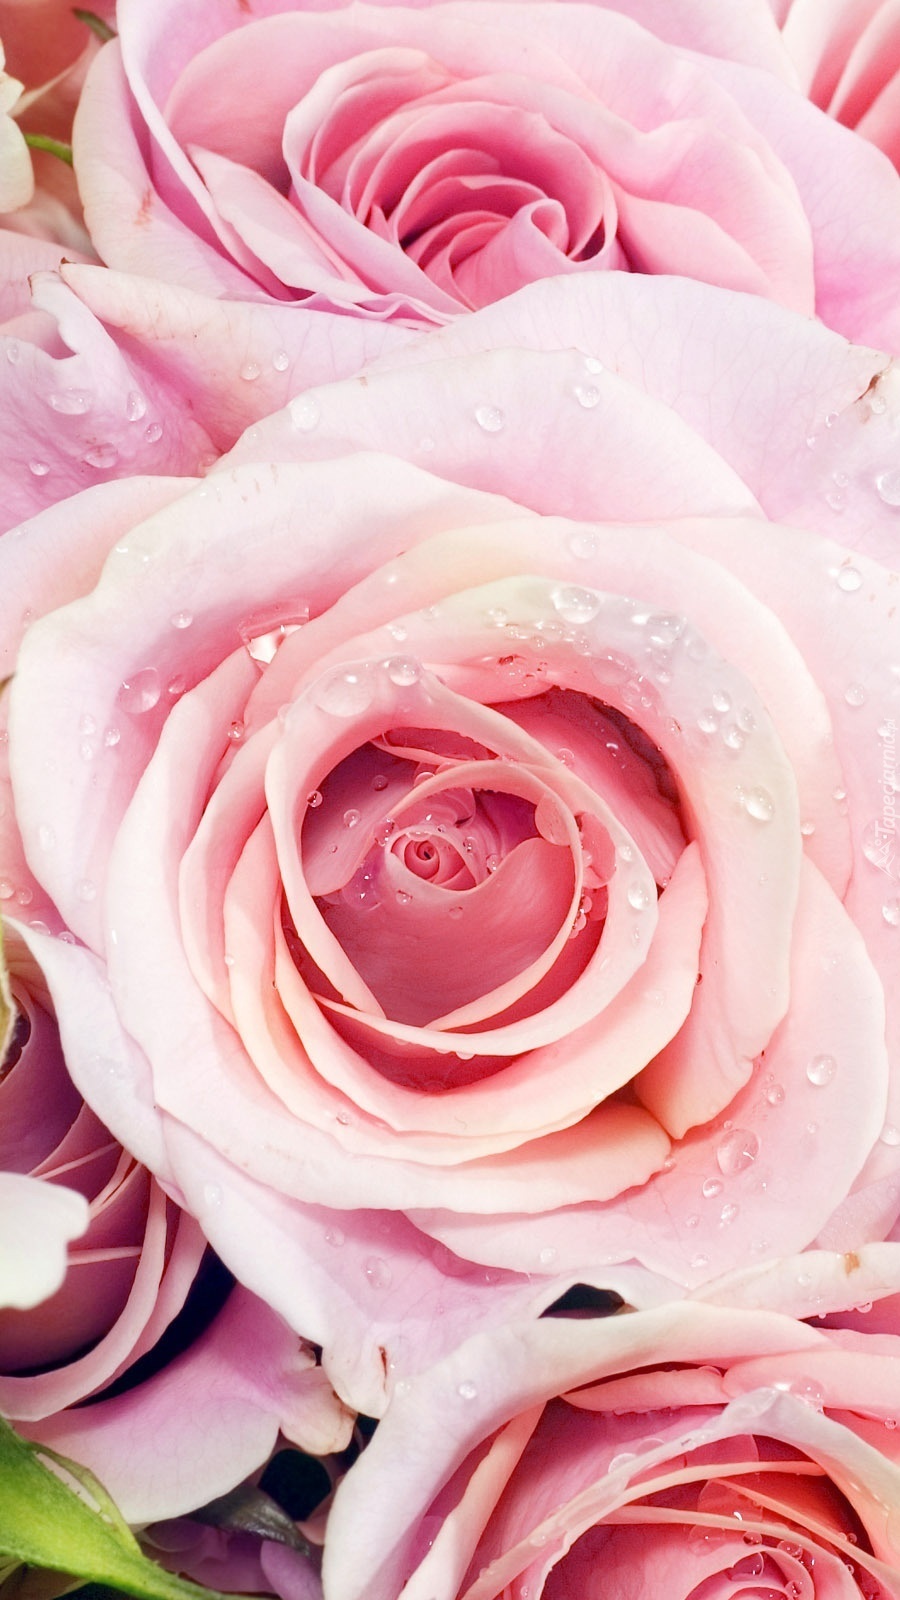 Rozwinięte różowe róże w kroplach rosy